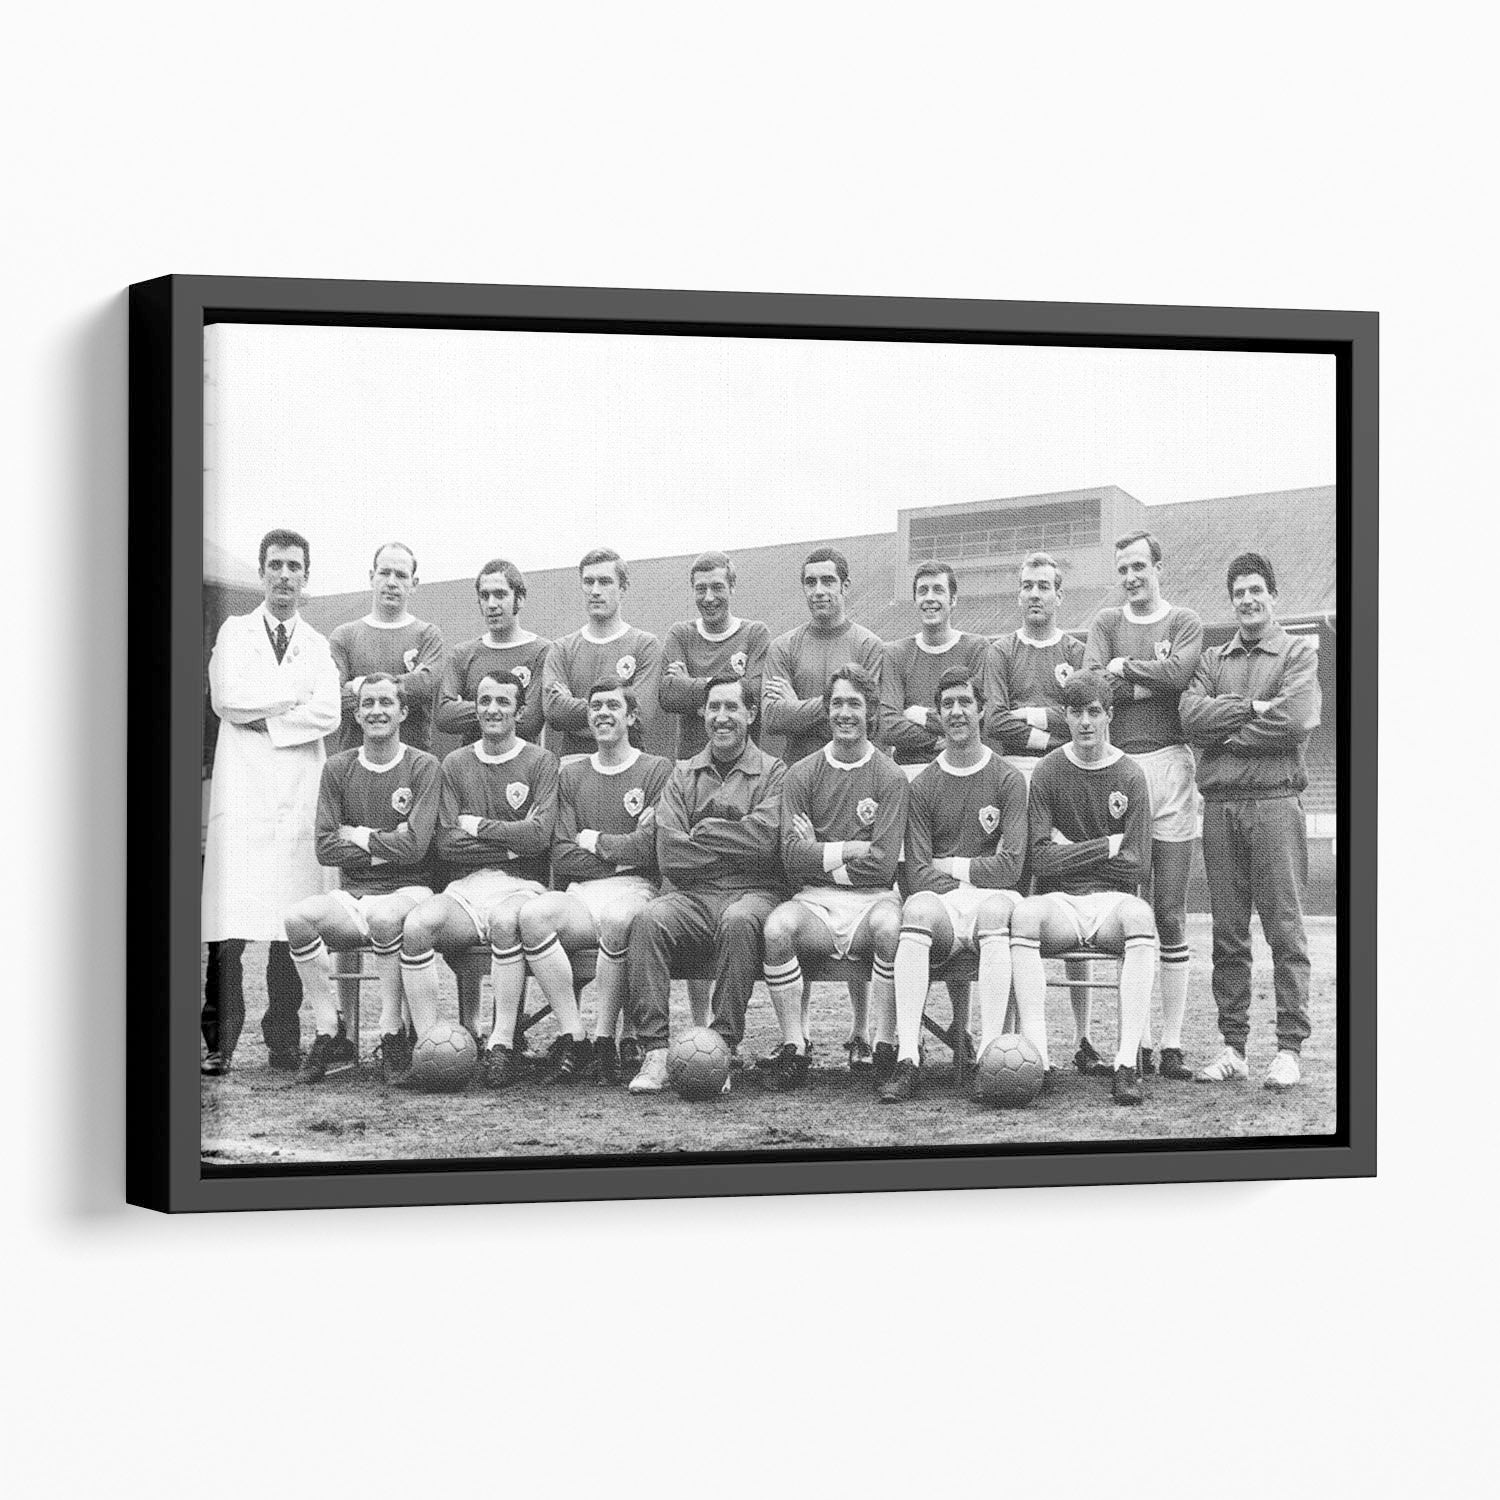 Leicester City Football Club Team Photo 1969 Floating Framed Canvas - Canvas Art Rocks - 1